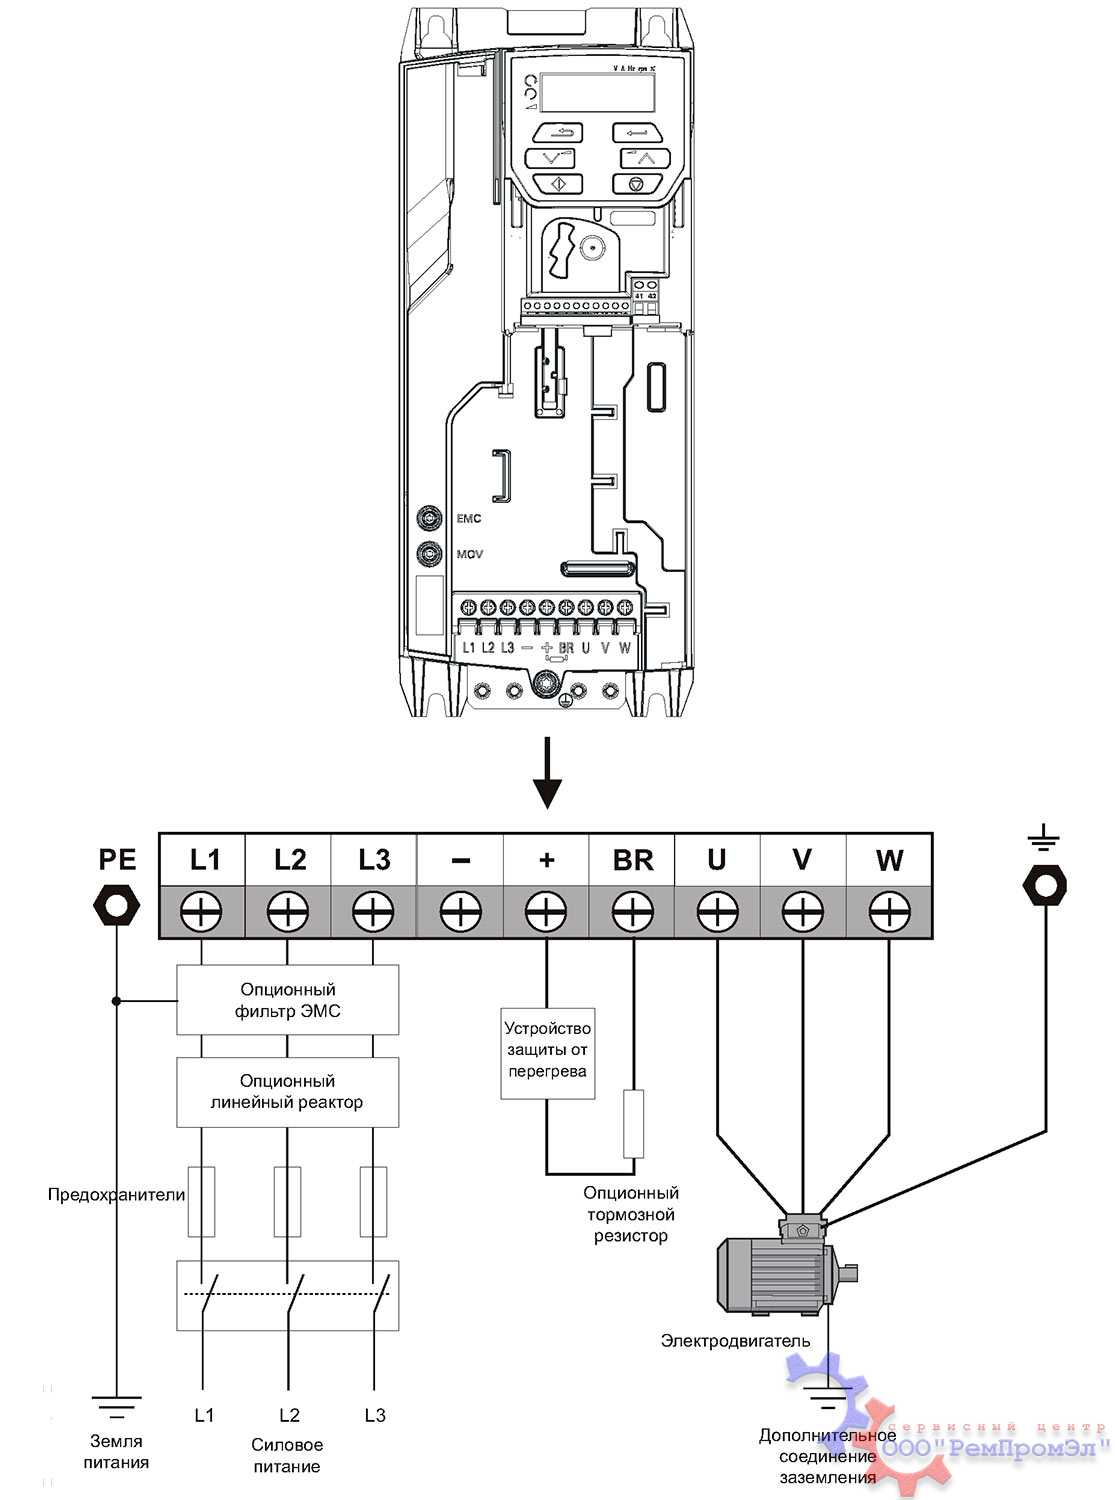 Схема подключения инвертора в исполнении IP54 (модель CIMR-E7Z47P52)